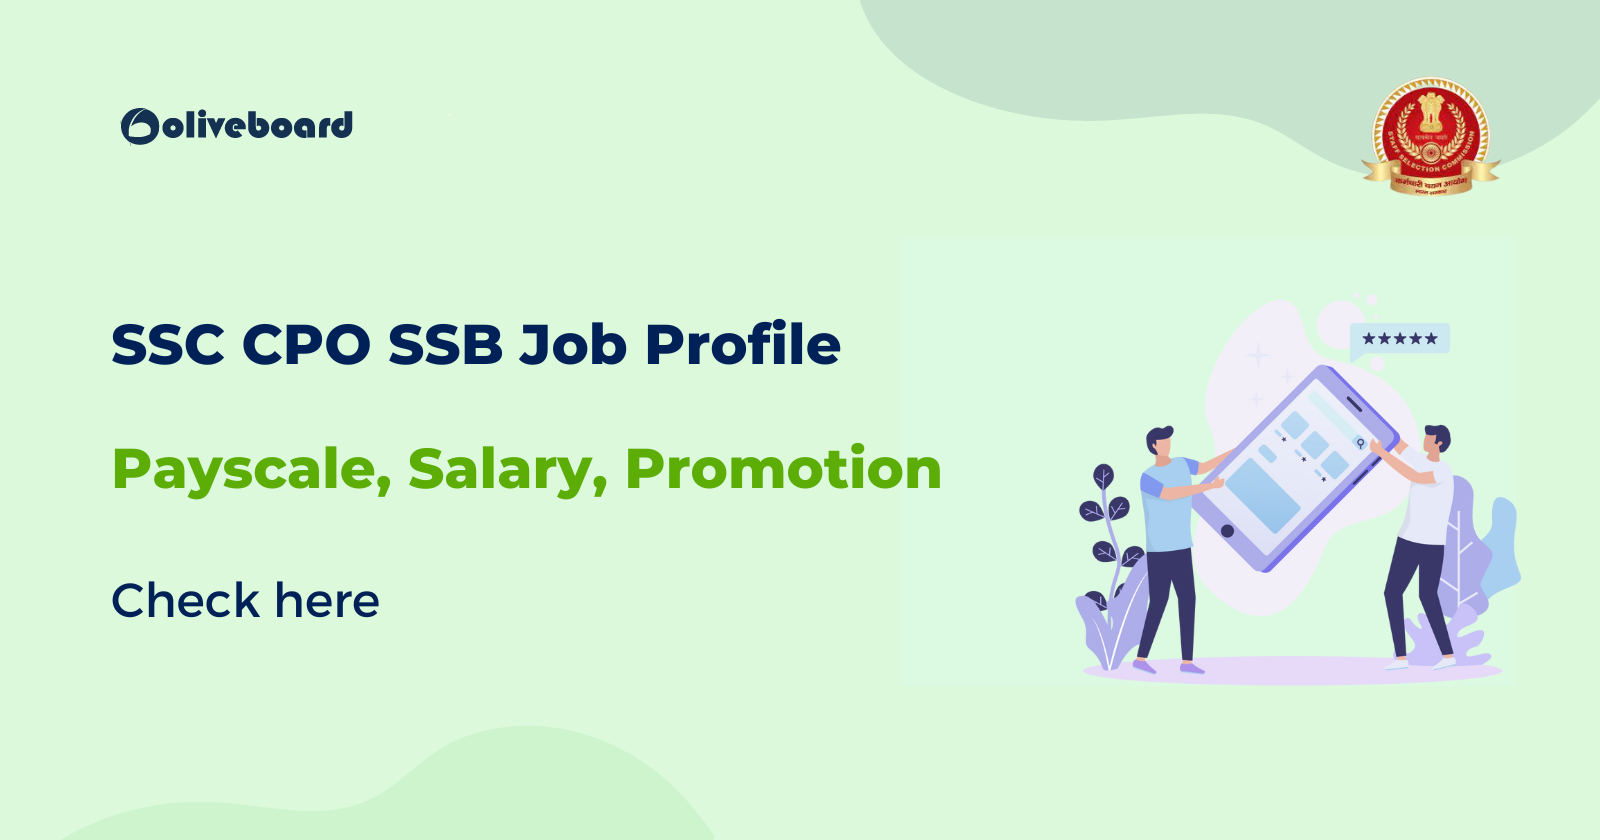 SSB CPO SSB Job Profile